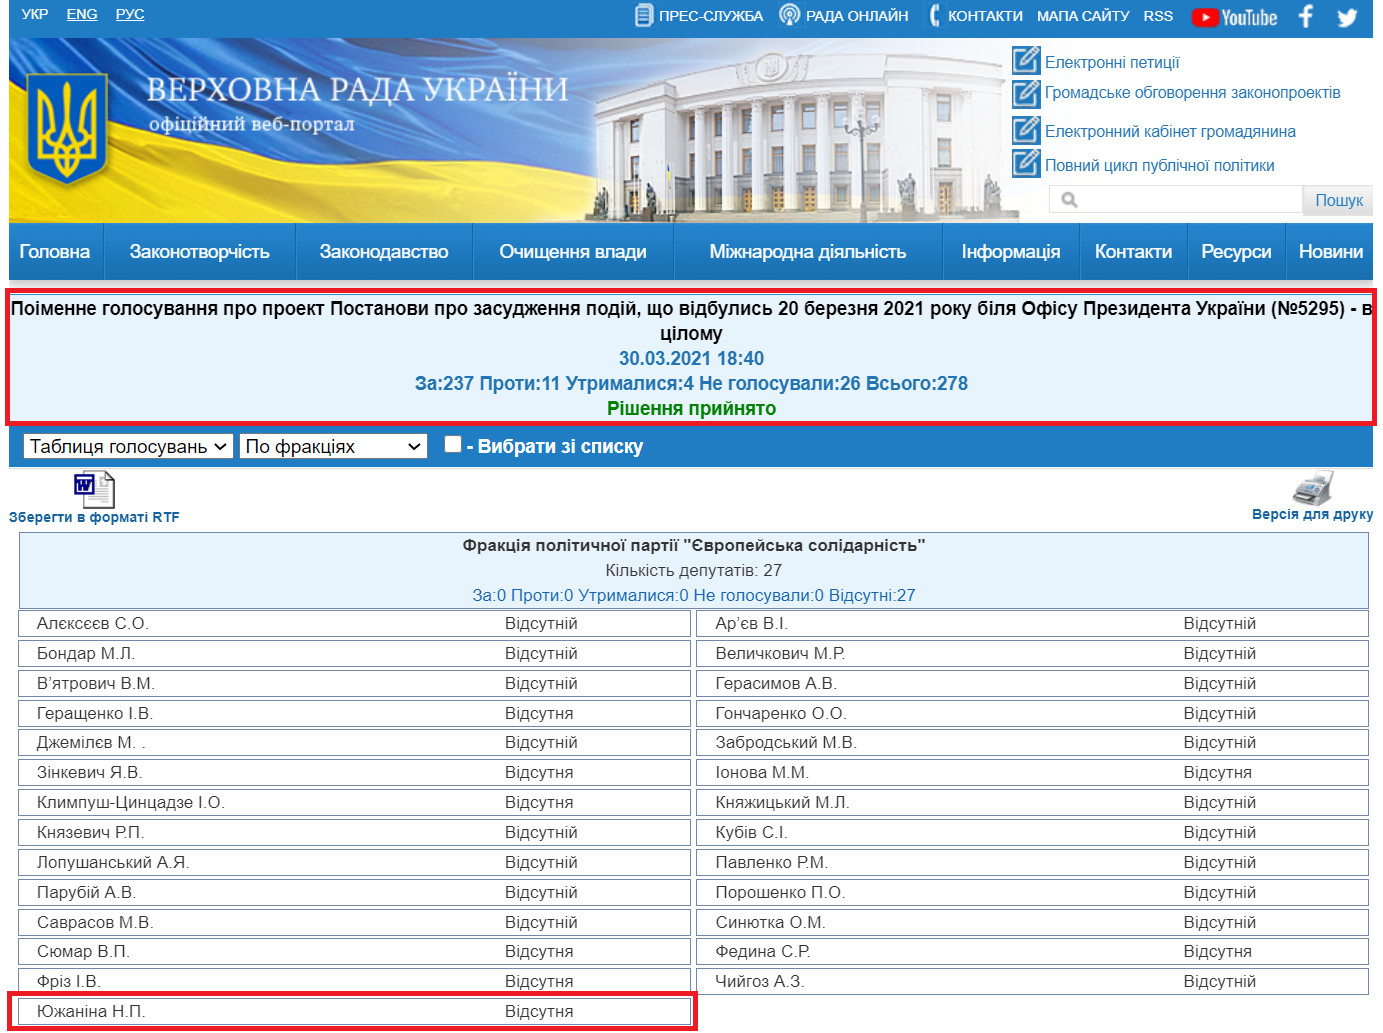 http://w1.c1.rada.gov.ua/pls/radan_gs09/ns_golos?g_id=11173